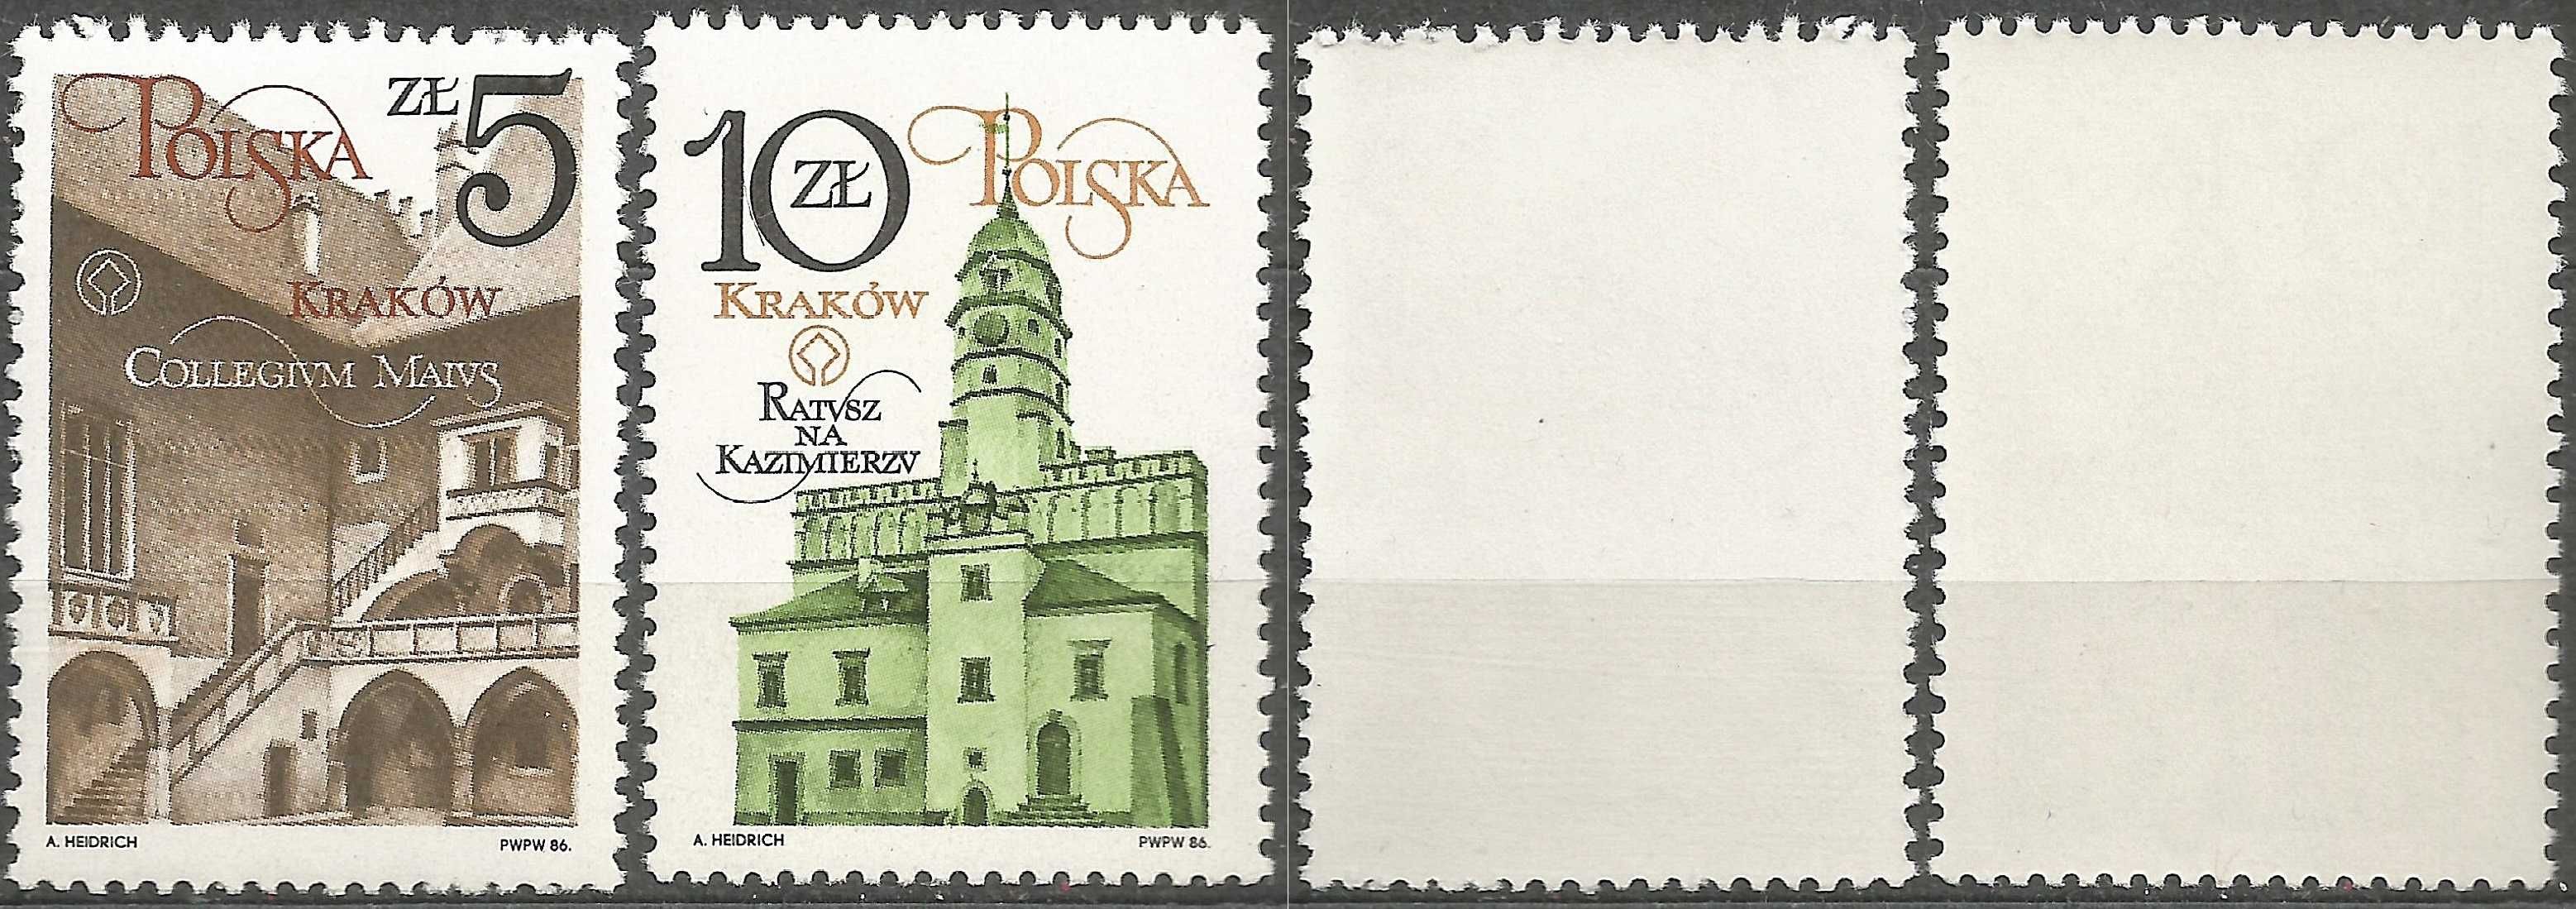 Znaczki seria: Odnowa zabytków Krakowa - FI 2869– 2870 stan** 1986 r.